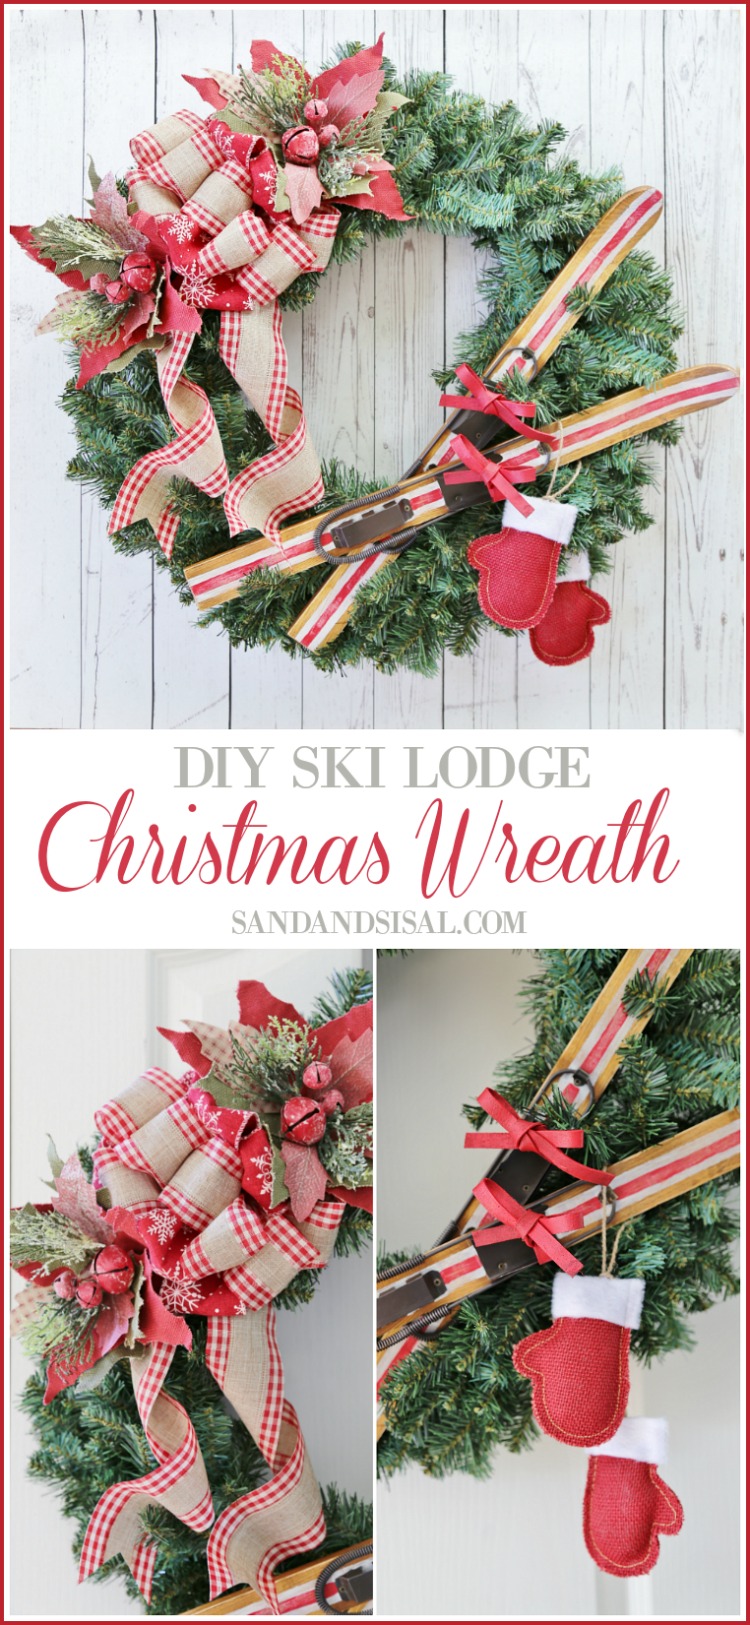 DIY Ski Lodge Christmas Wreath